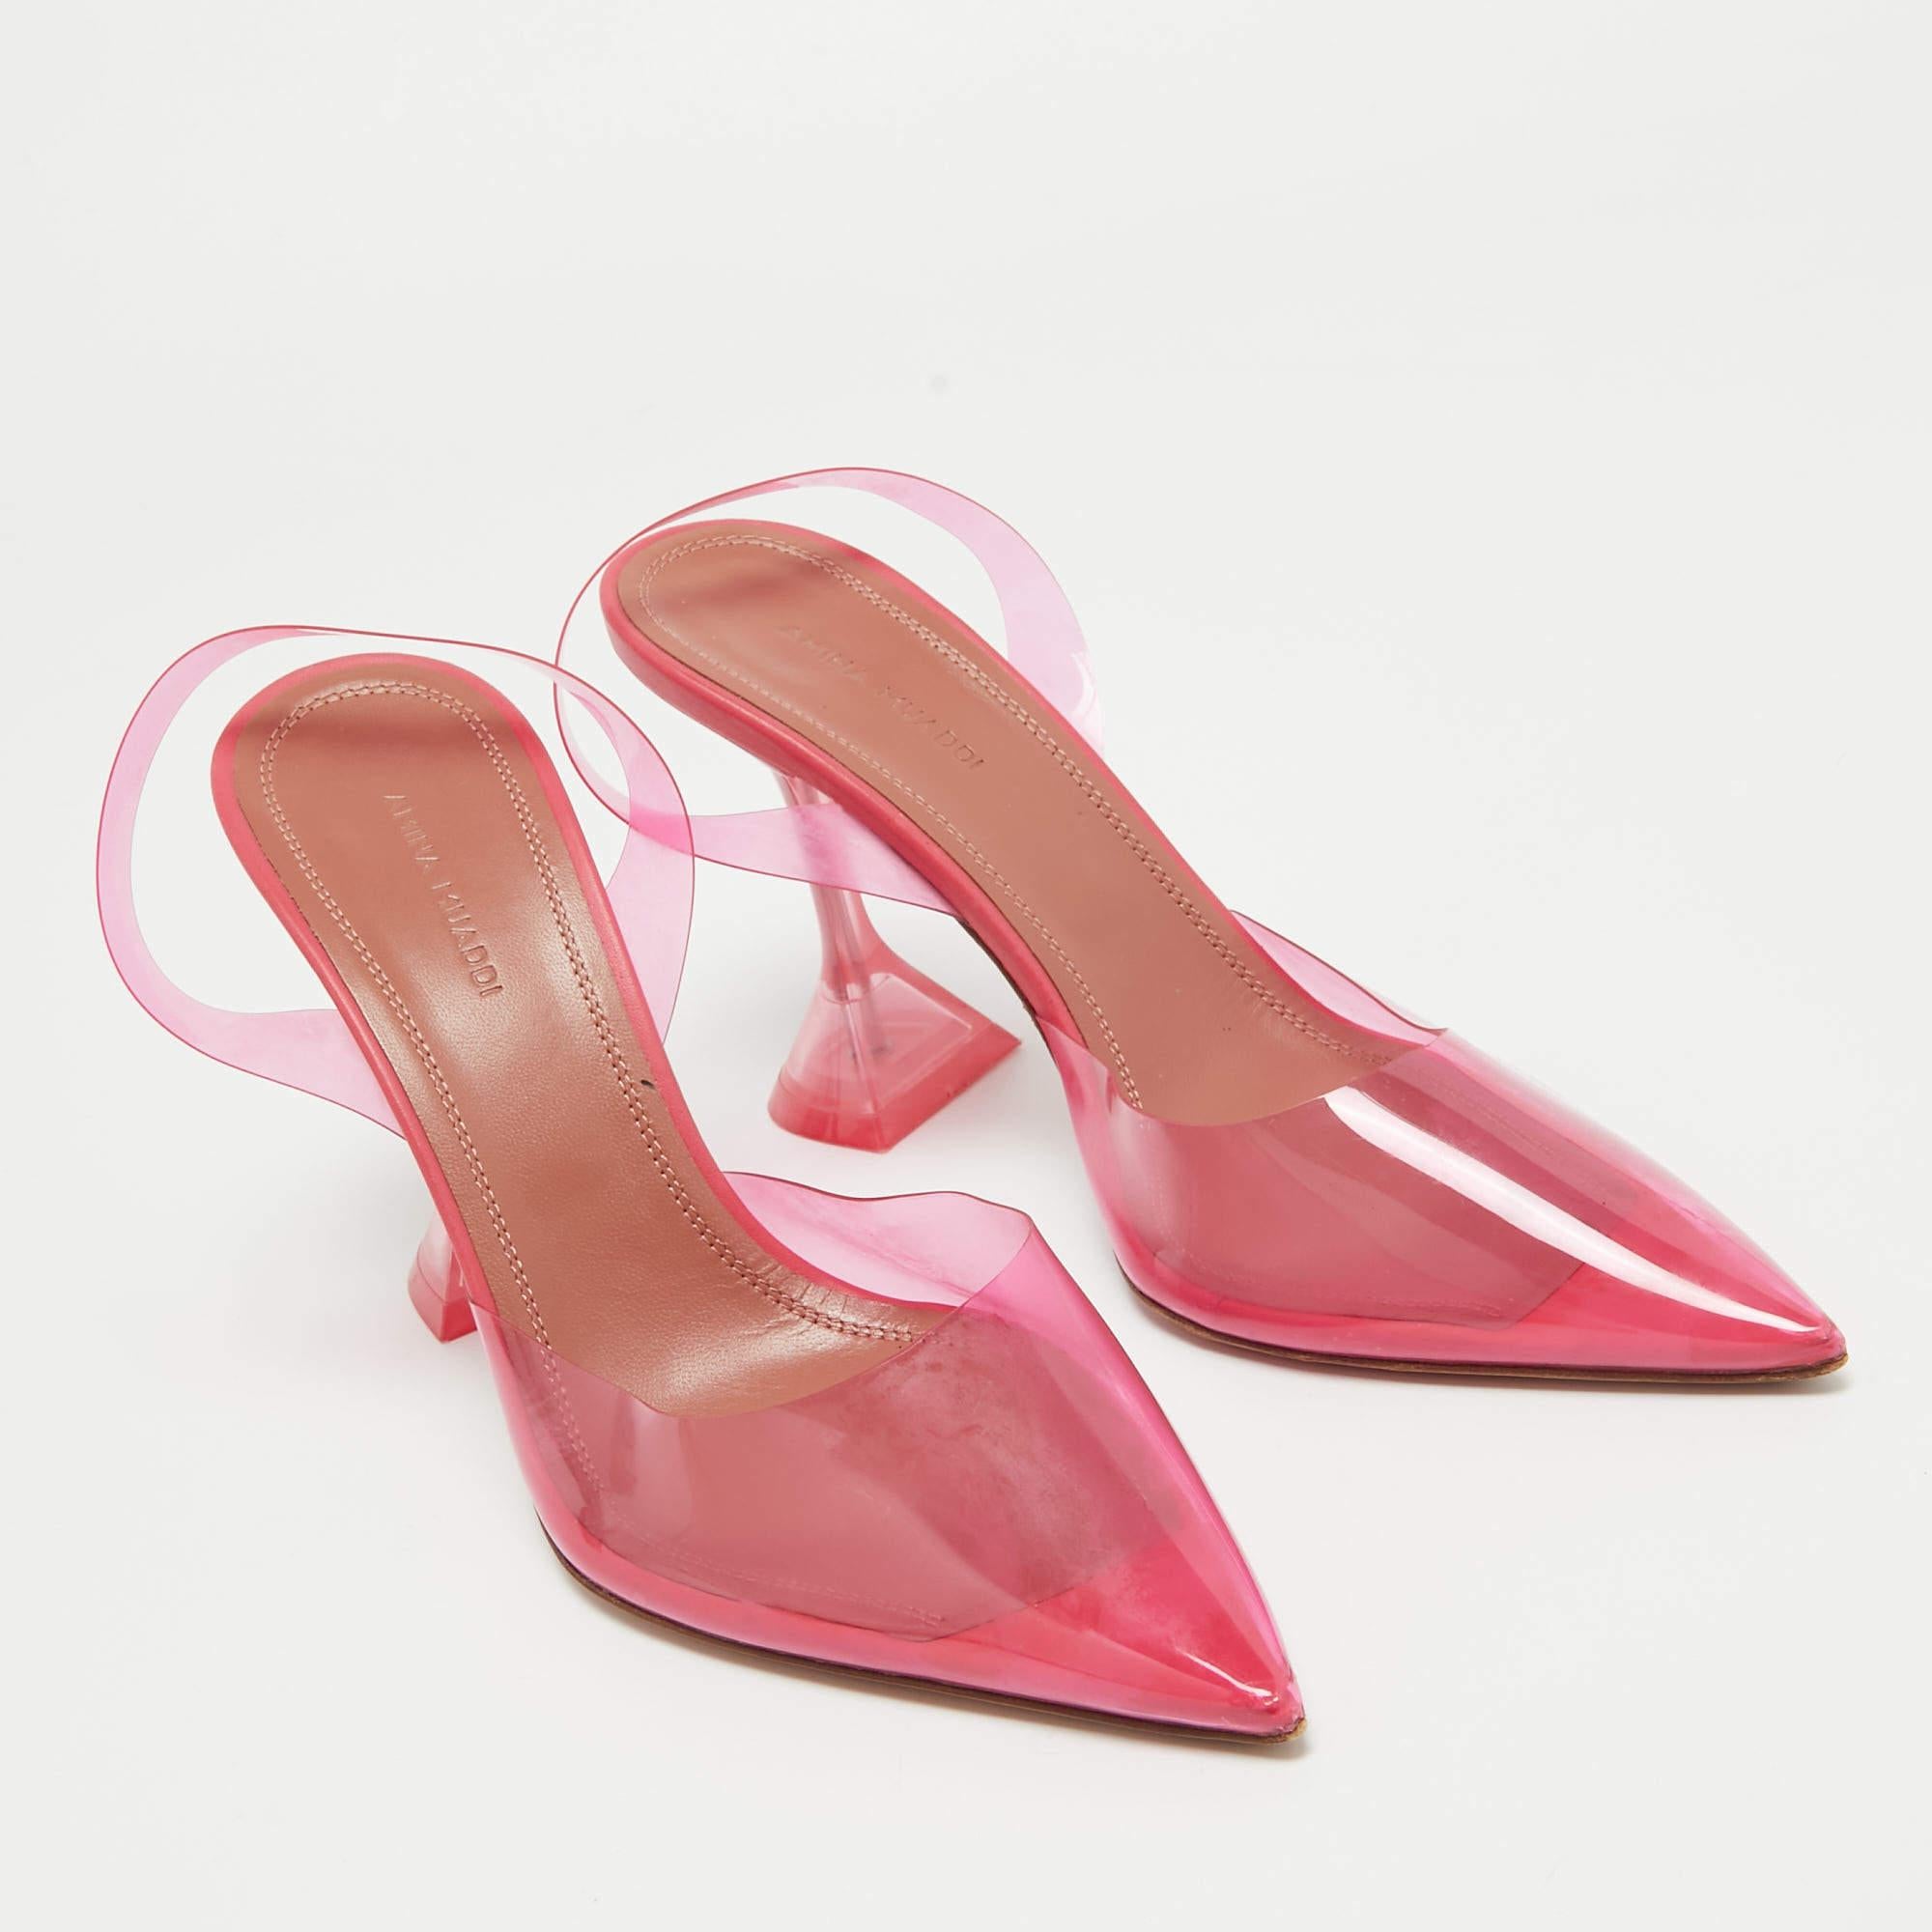 Amina Muaddi Pink PVC Holli Glass Slingback Pumps Size 38 In Good Condition For Sale In Dubai, Al Qouz 2